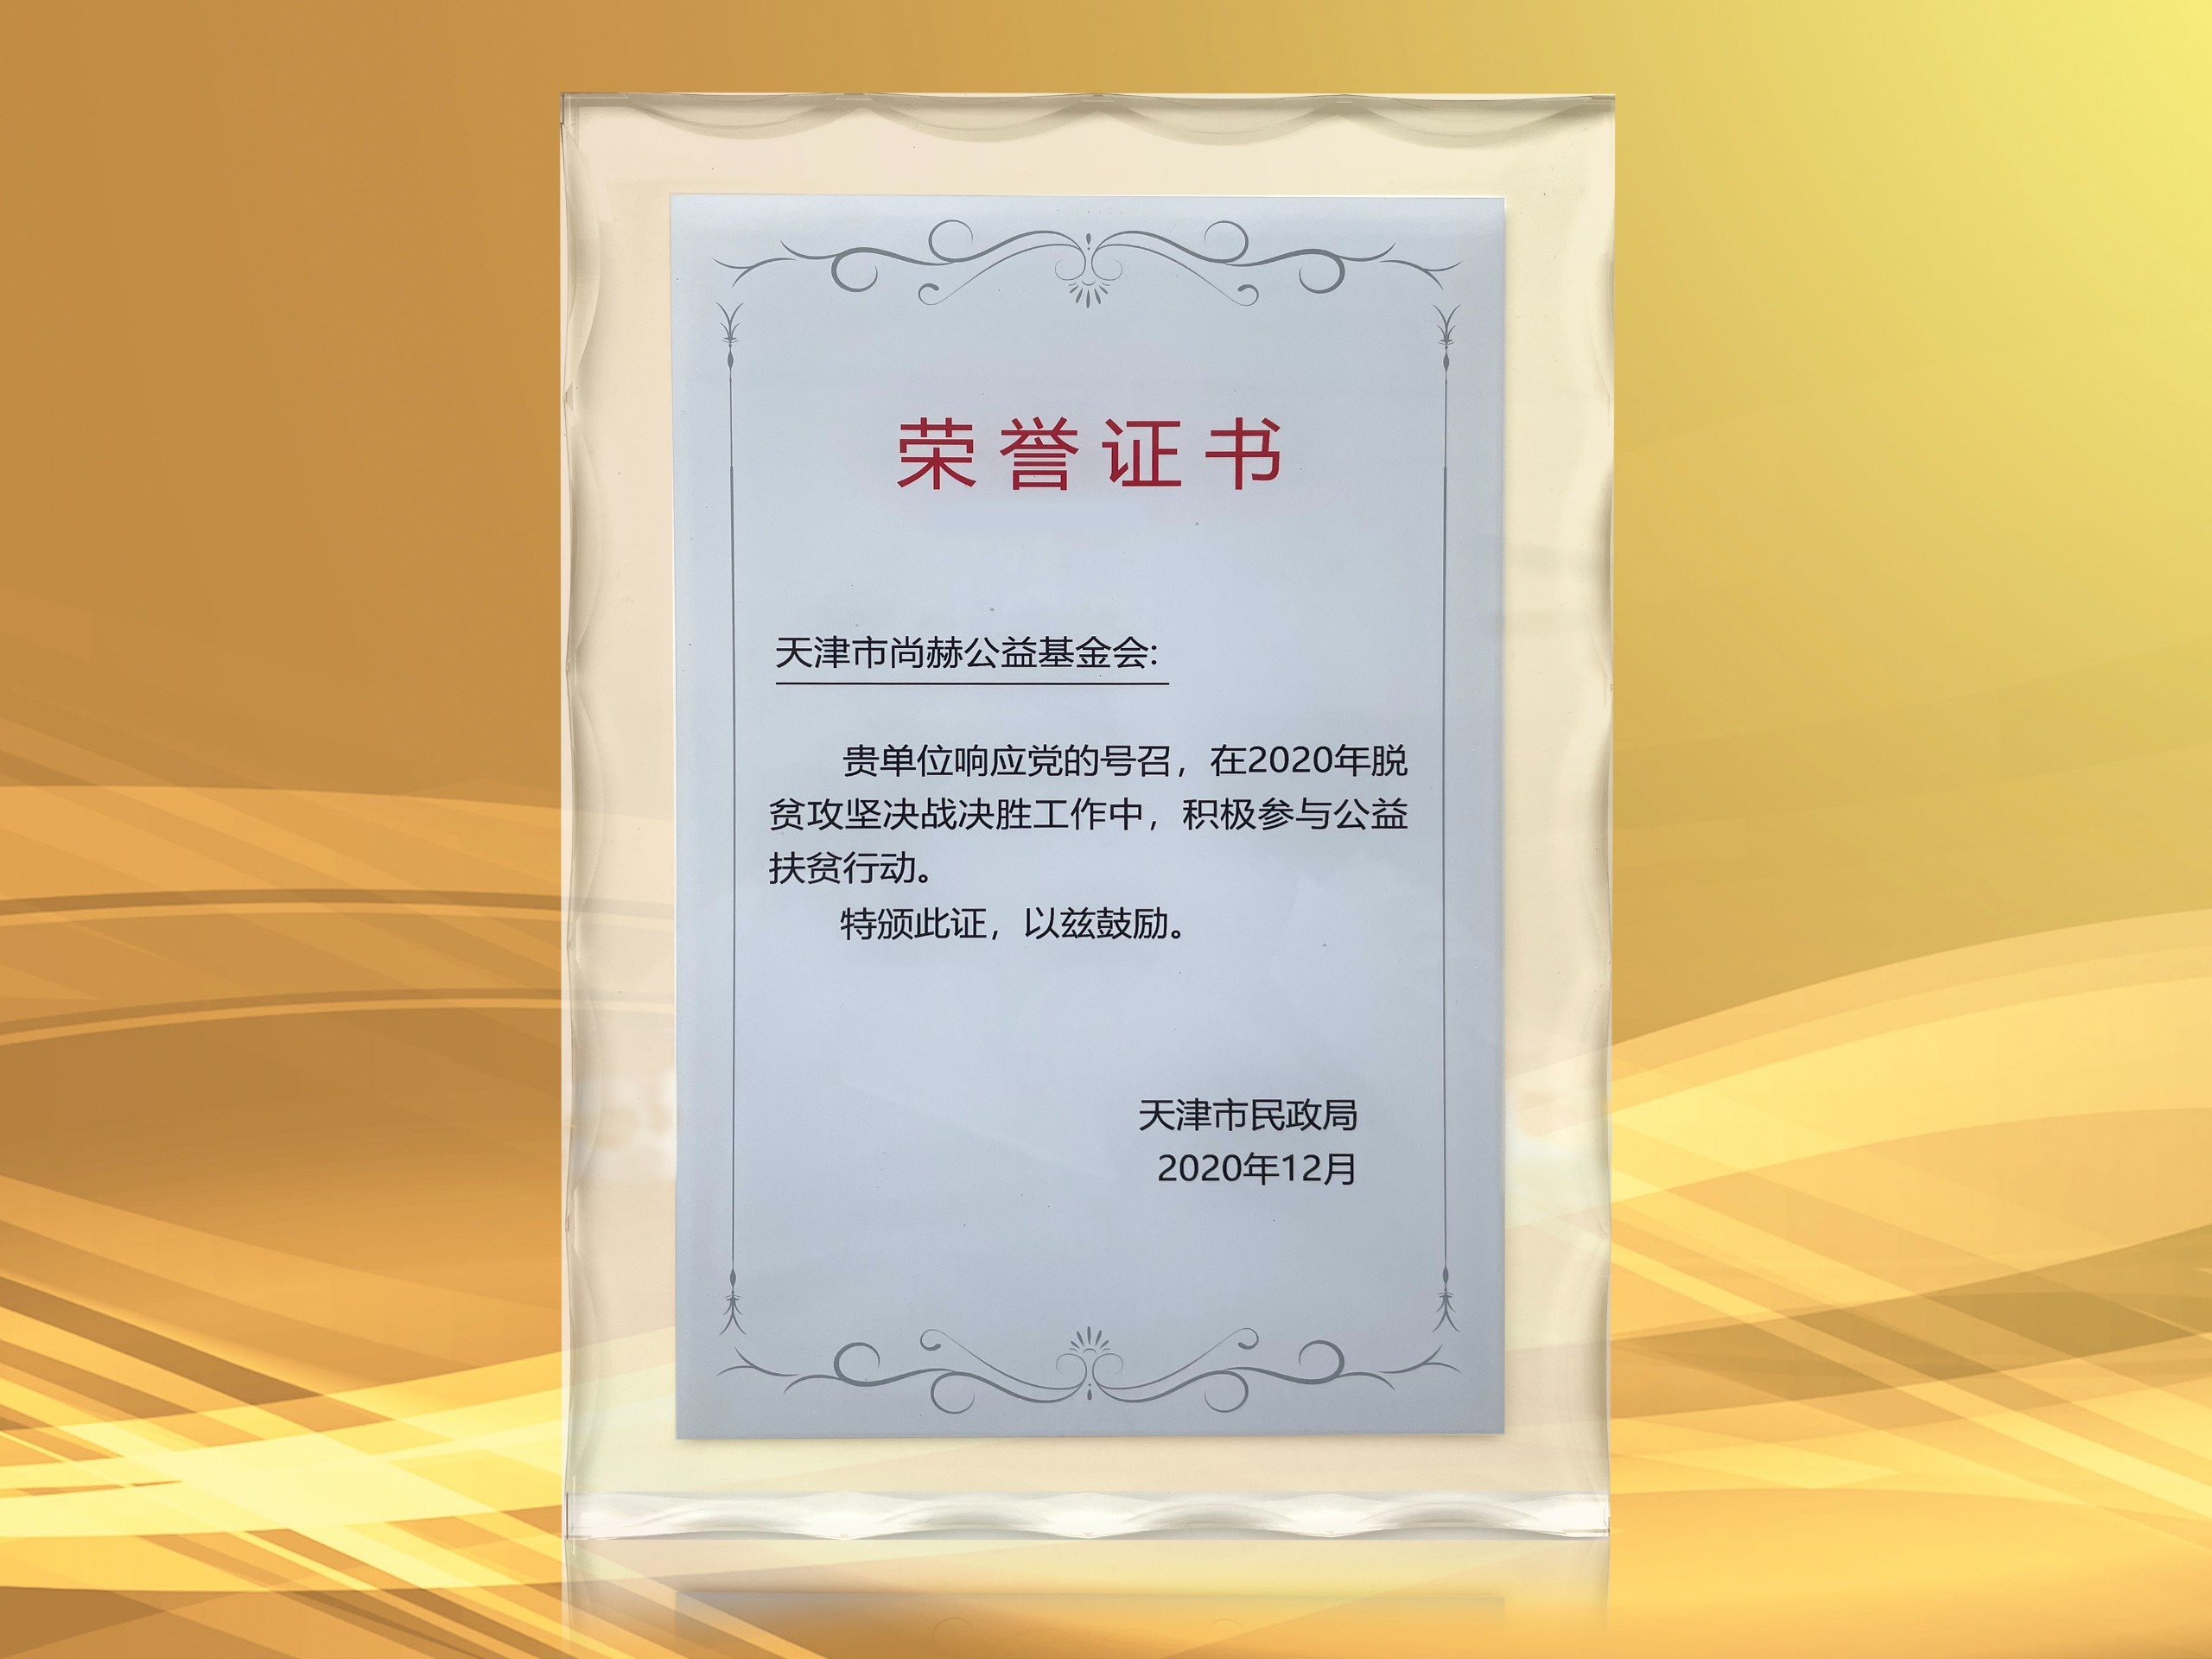 3月-立博登录（中国）有限公司官网公益基金会获得天津市民政局颁发的荣誉证书